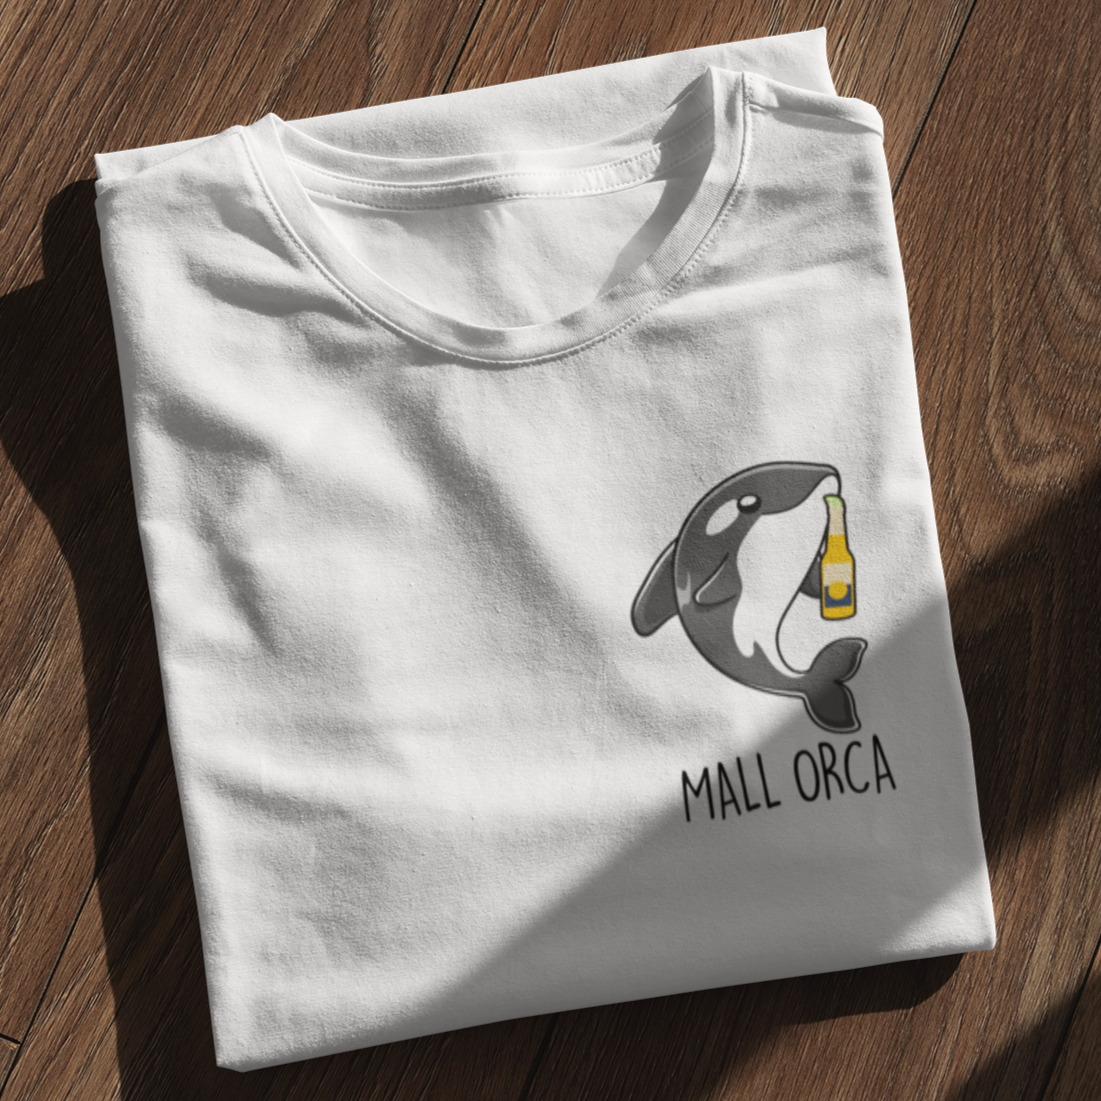 MALL ORCA - Premium Shirt Damen - Weinspirits